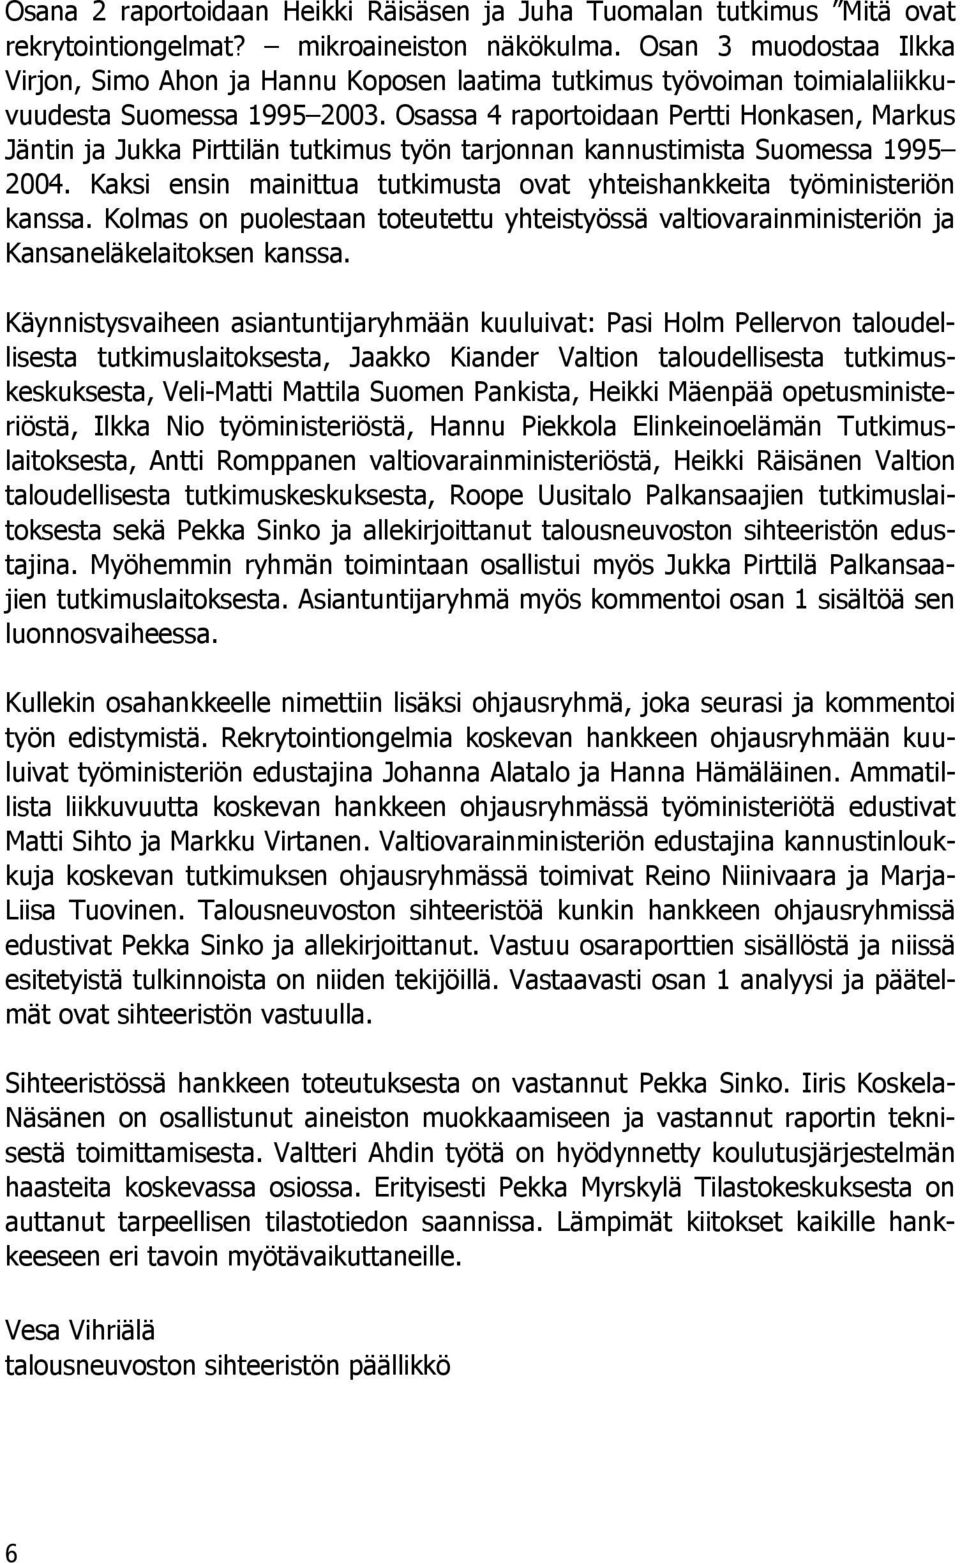 Osassa 4 raportoidaan Pertti Honkasen, Markus Jäntin ja Jukka Pirttilän tutkimus työn tarjonnan kannustimista Suomessa 1995 2004.